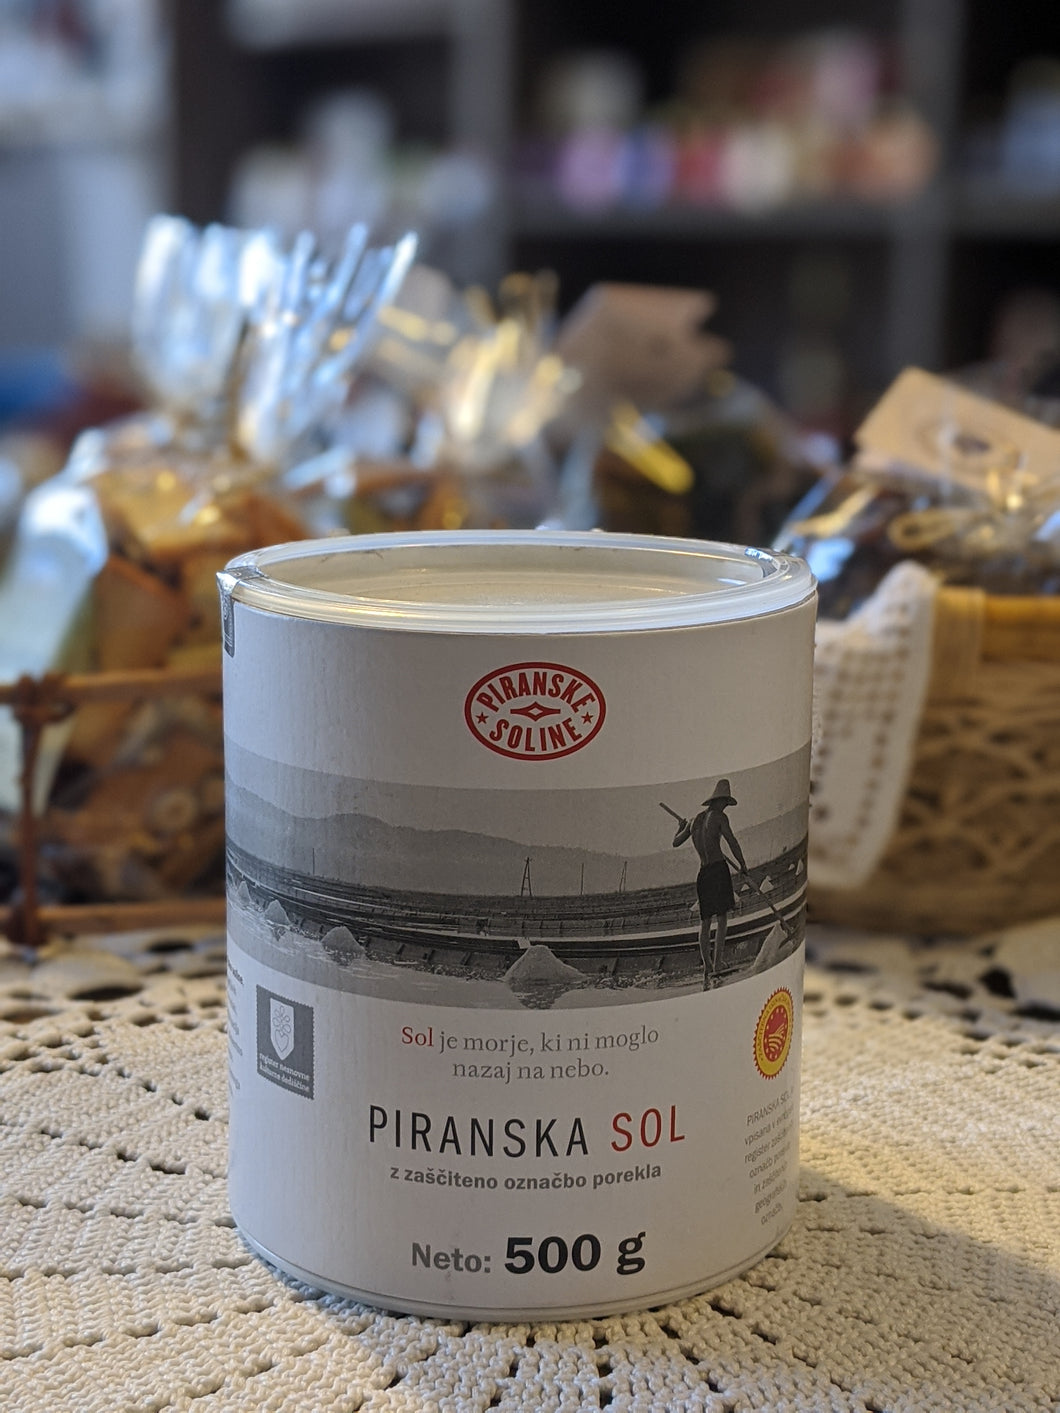 Piran salt 500 g - protected designation of origin